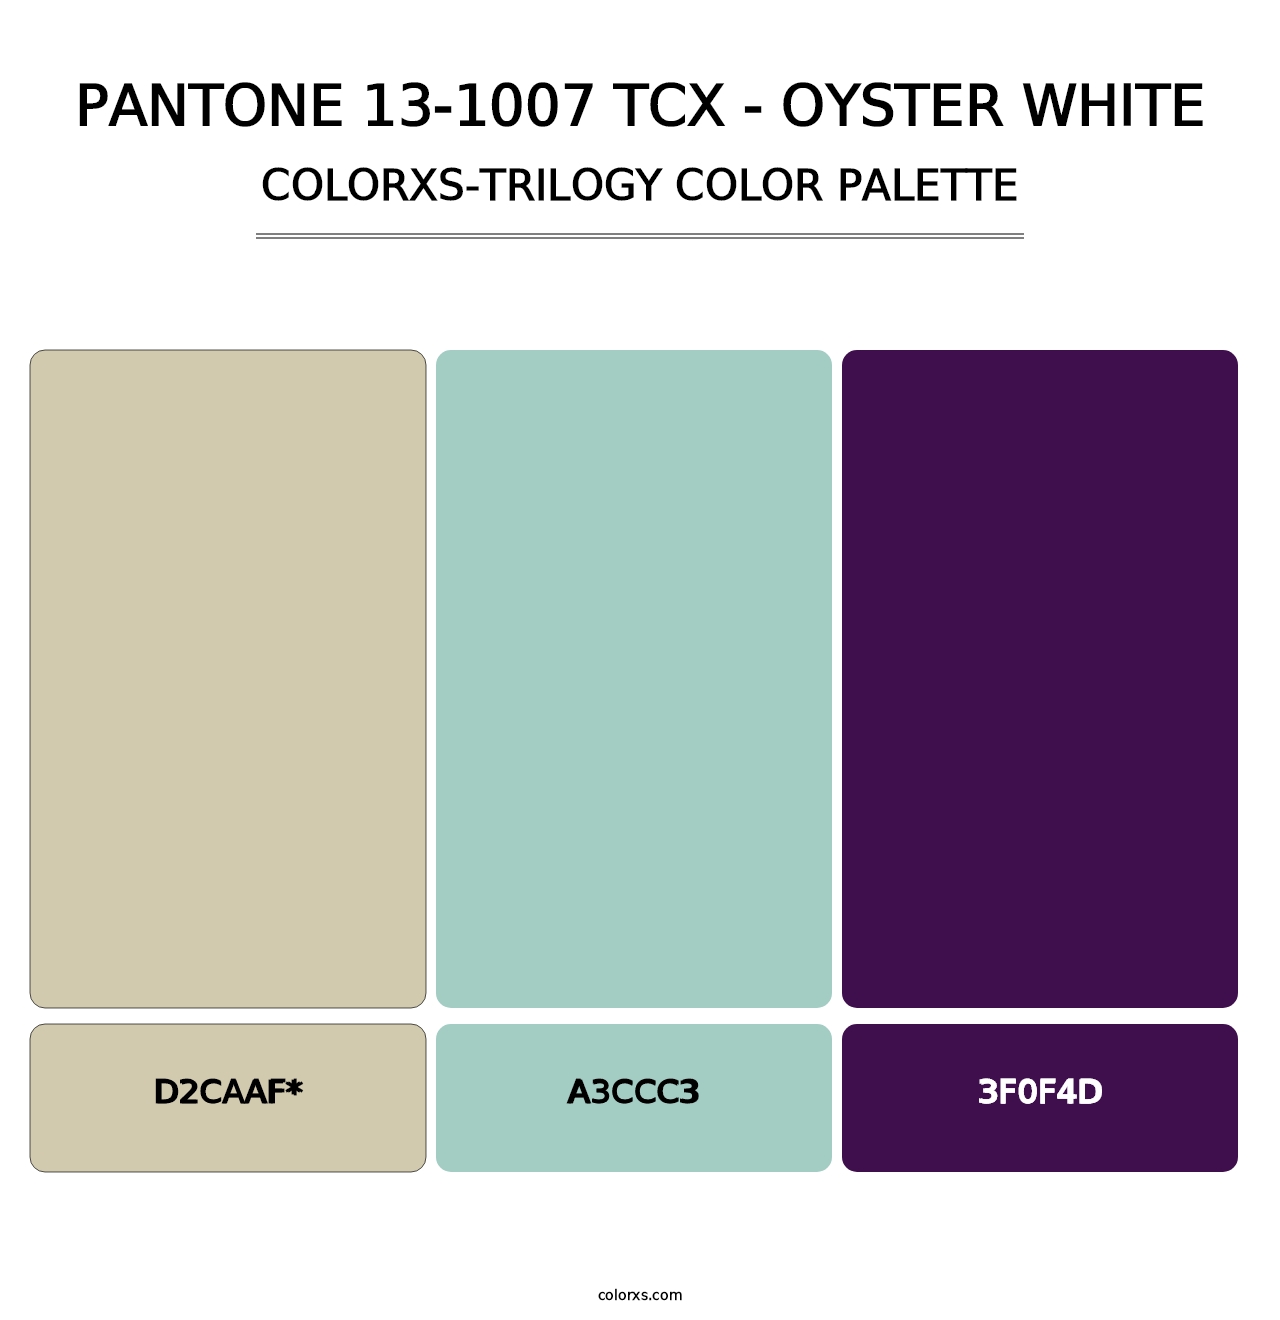 PANTONE 13-1007 TCX - Oyster White - Colorxs Trilogy Palette